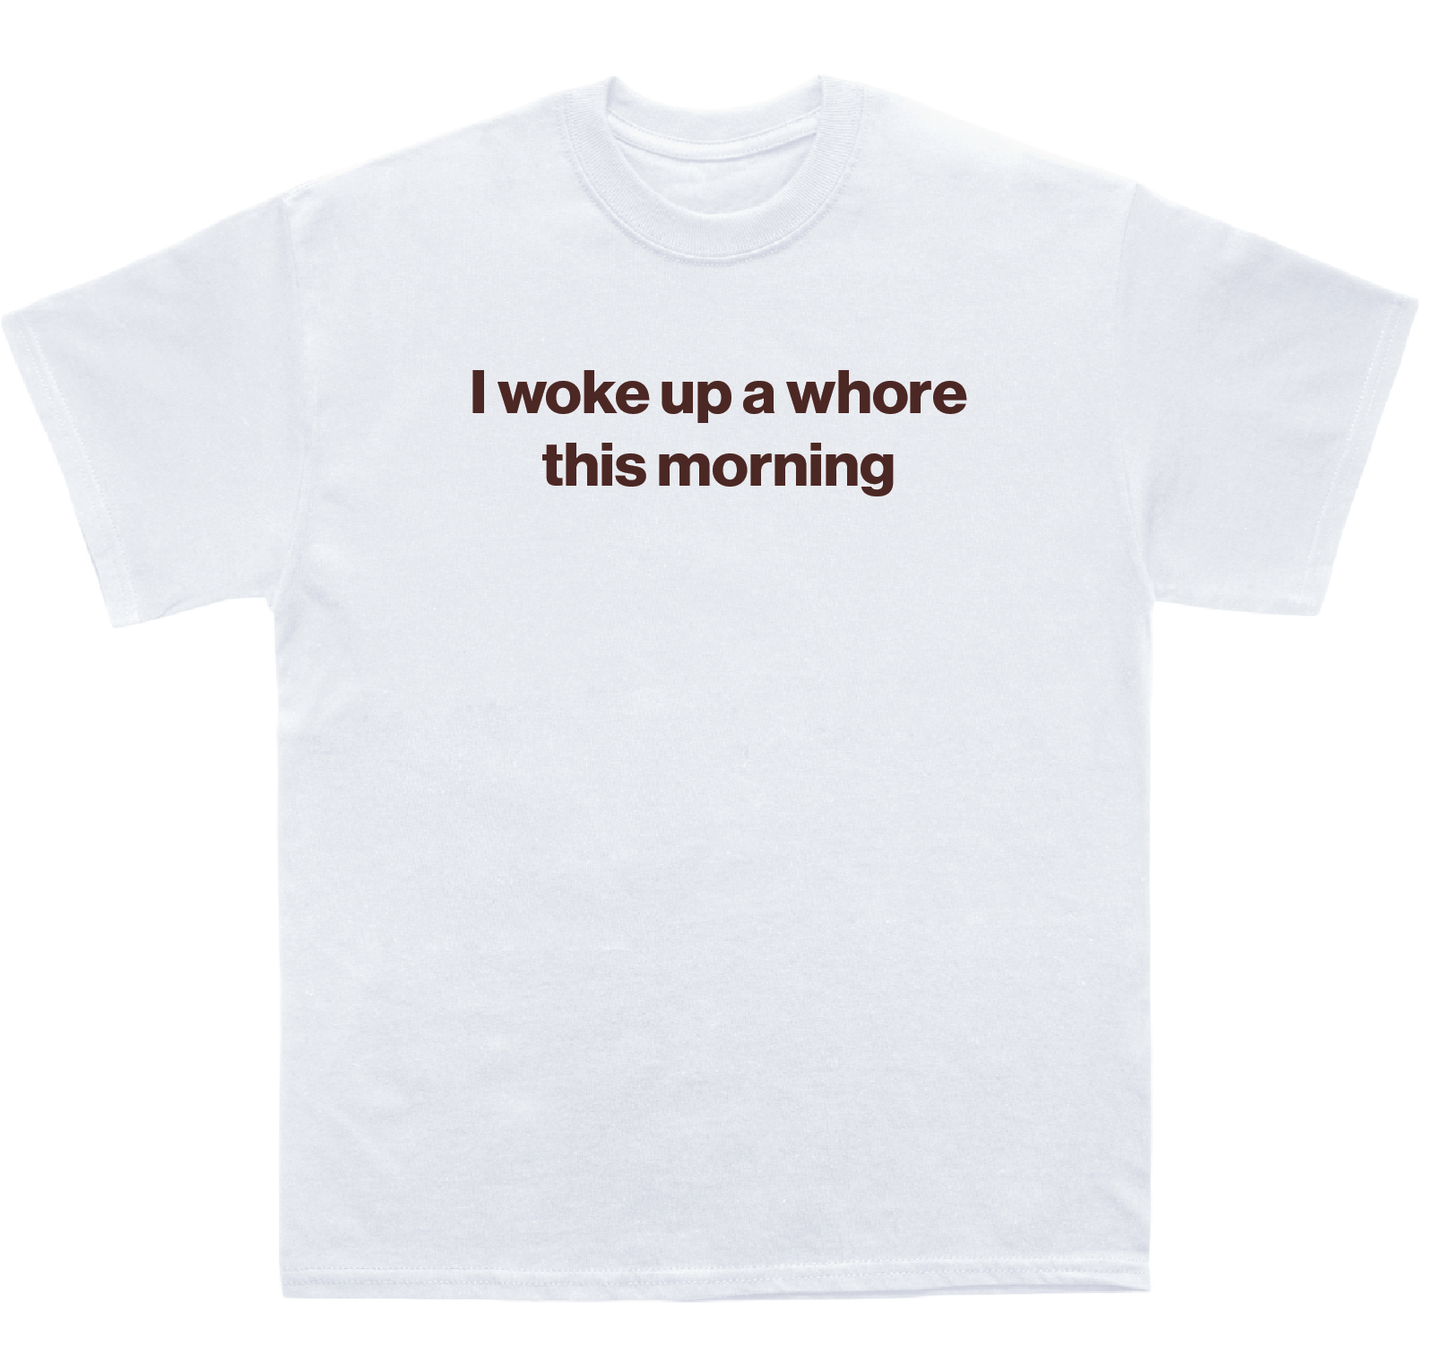 I woke up a whore this morning shirt